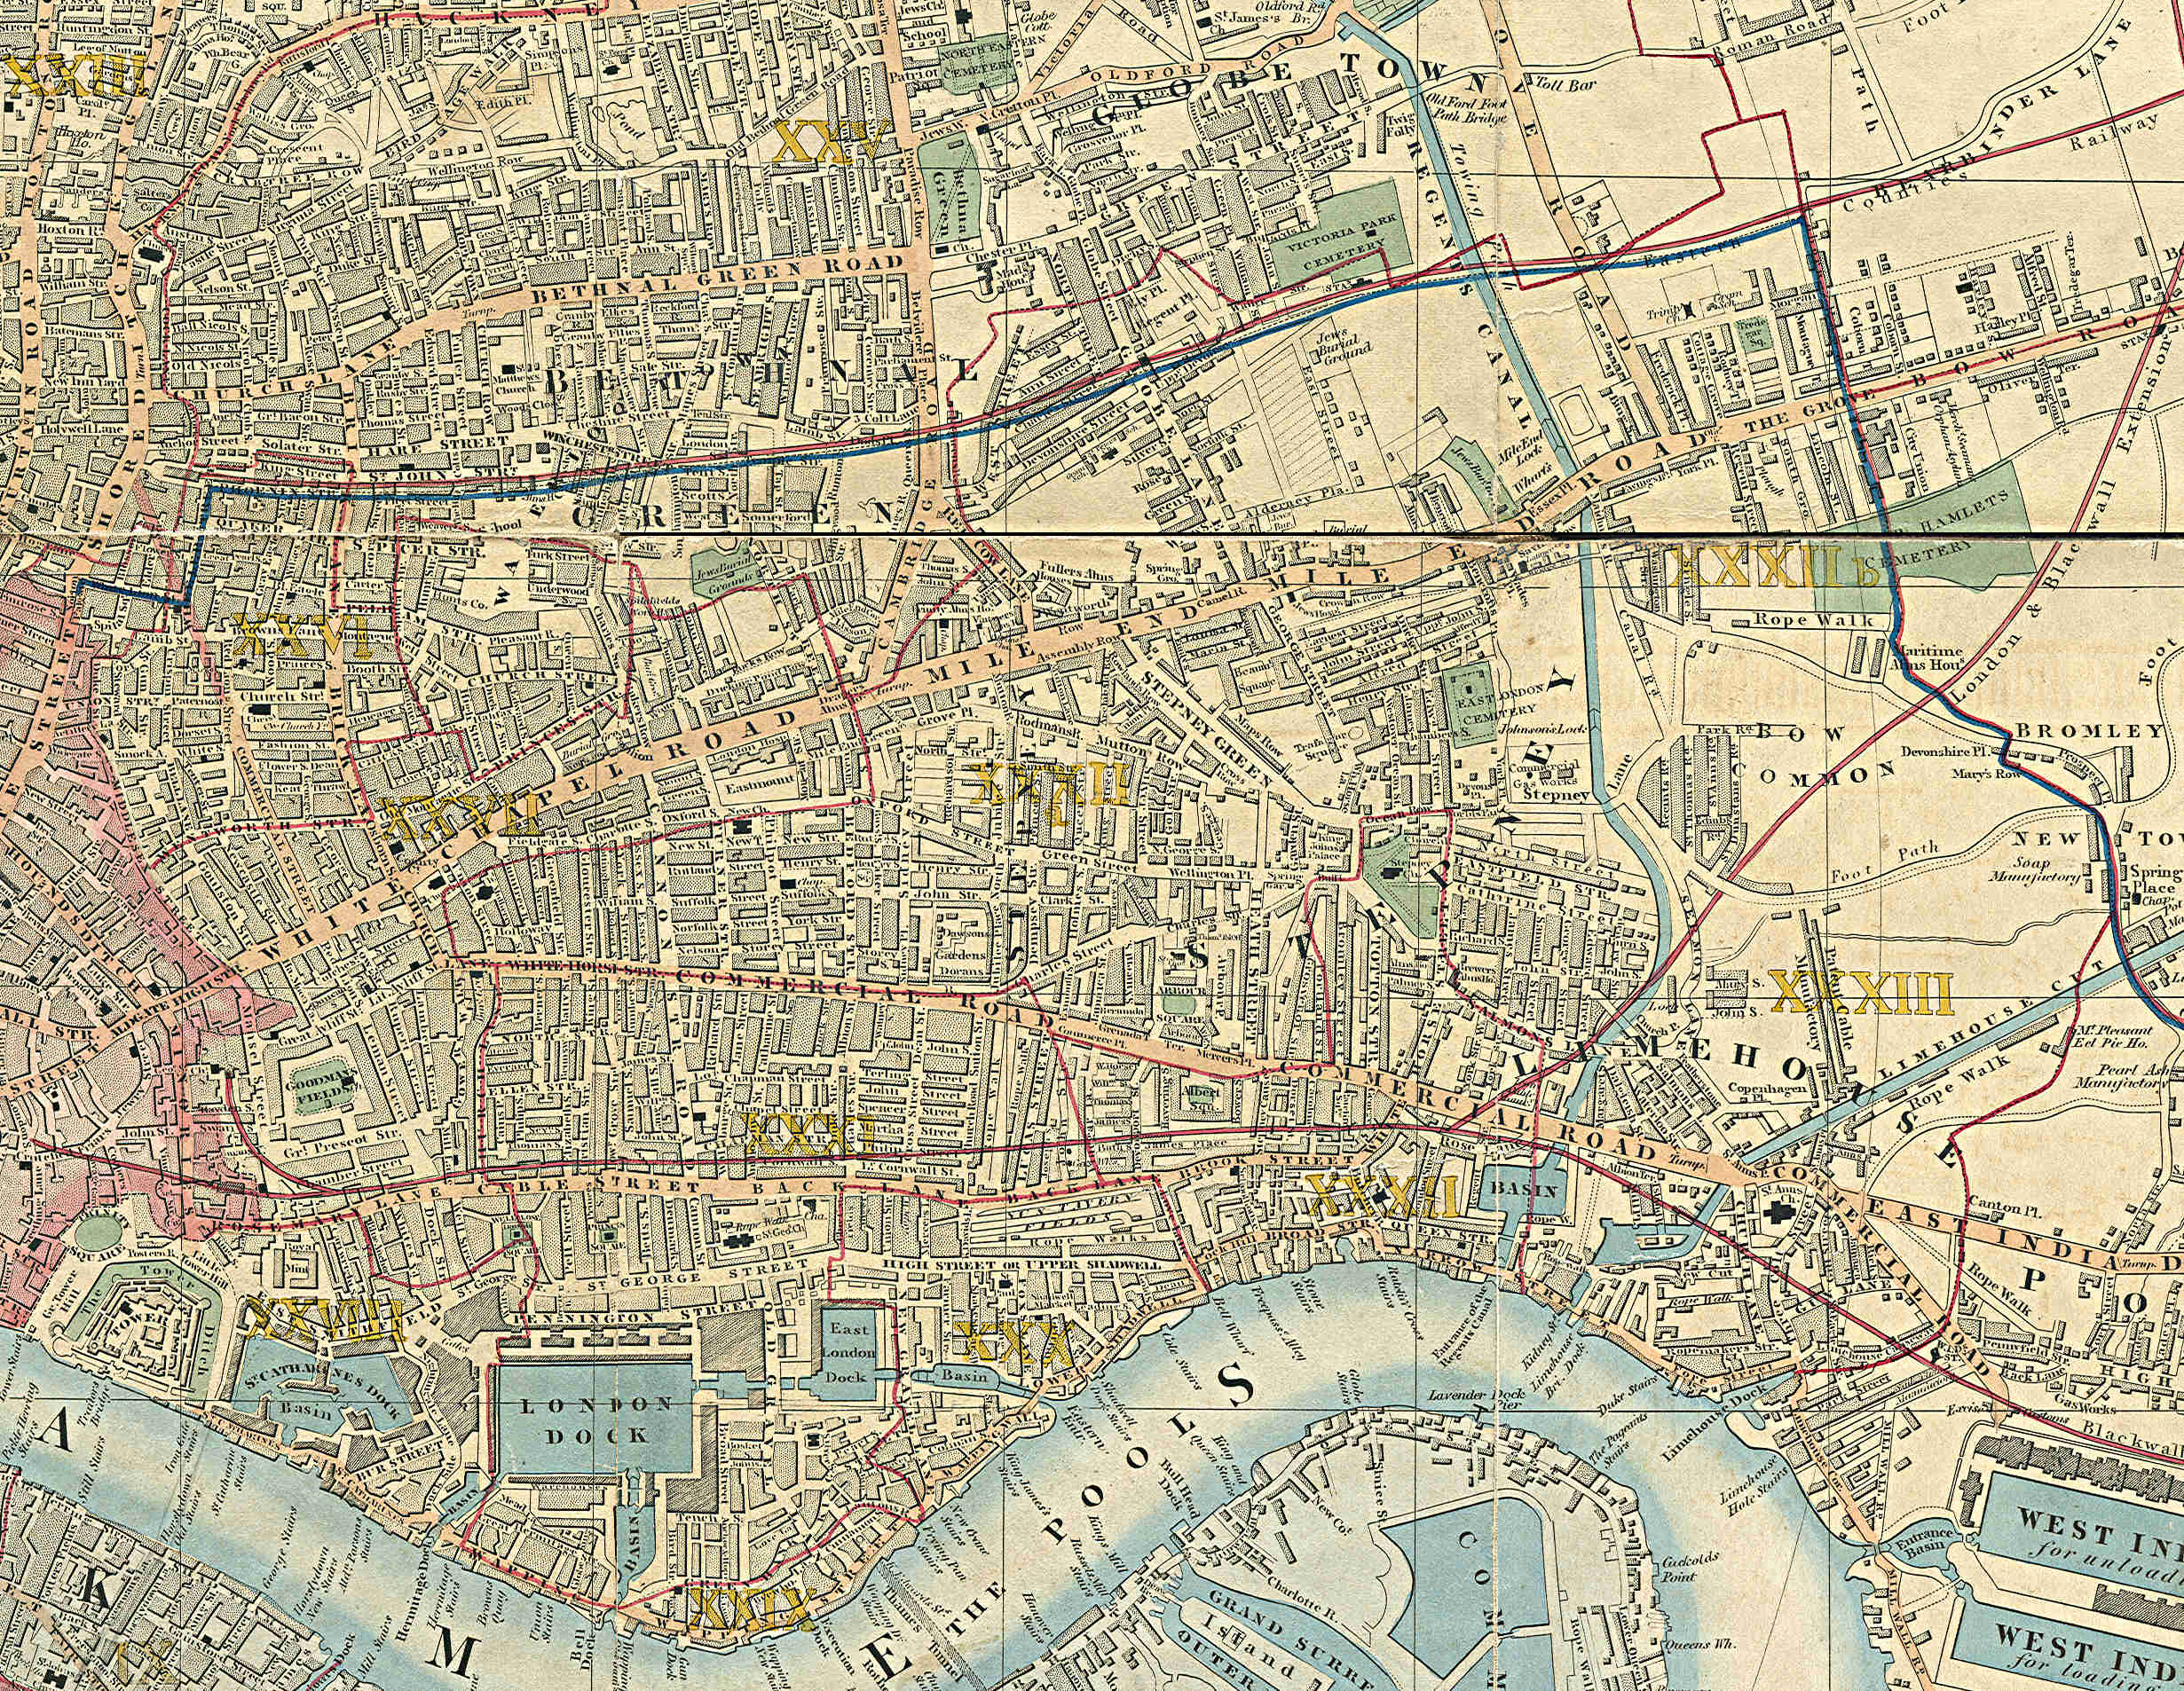 1853 - Cross, "Cross's New Plan Of London"